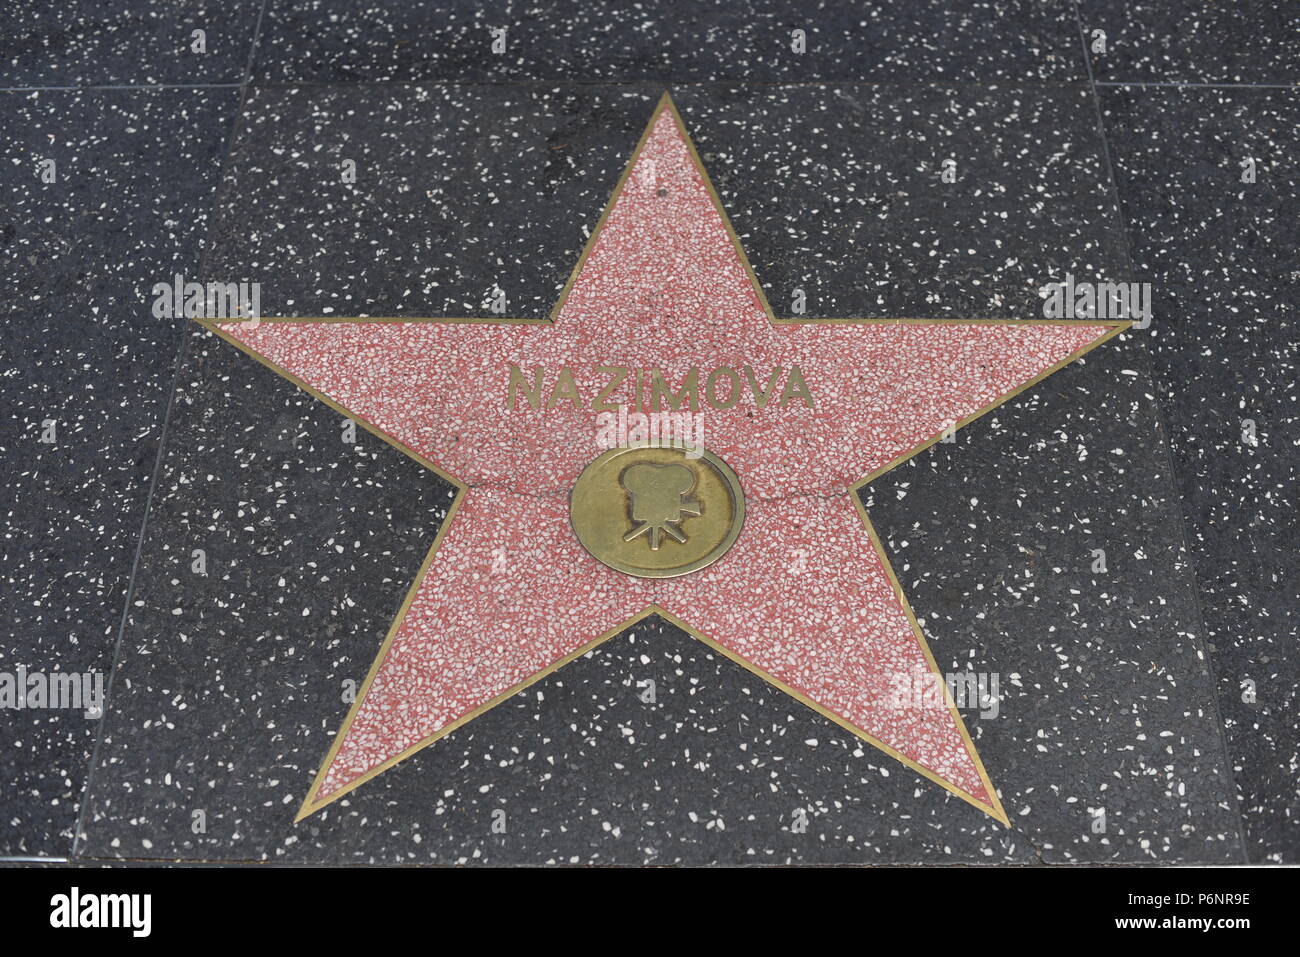 HOLLYWOOD, CA - 29 Giugno: Nazimova stella sulla Hollywood Walk of Fame in Hollywood, la California il 29 giugno 2018. Foto Stock